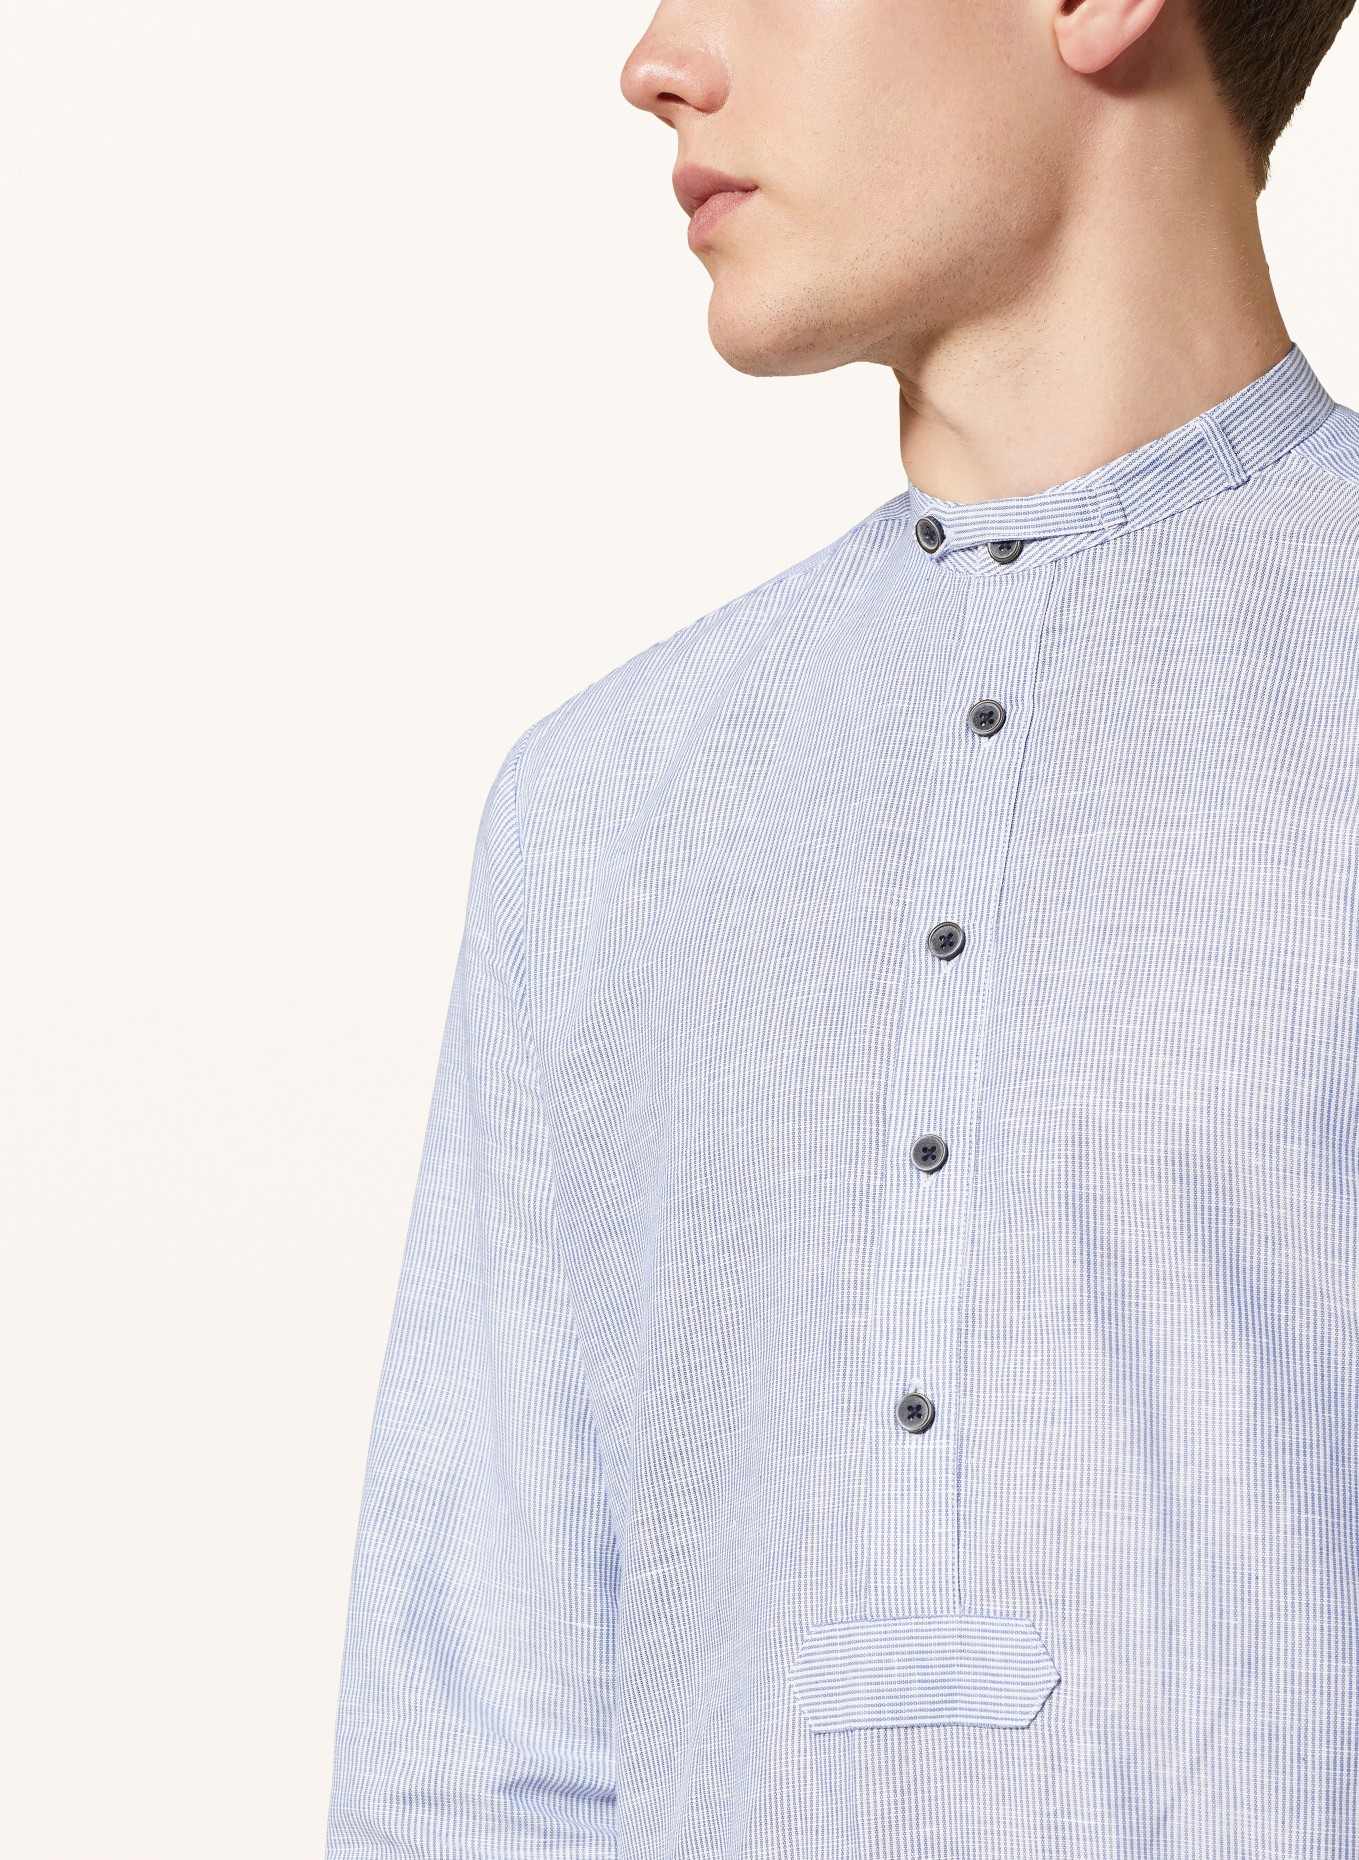 Hammerschmid Trachten shirt PFOAD regular fit, Color: WHITE/ LIGHT BLUE (Image 4)